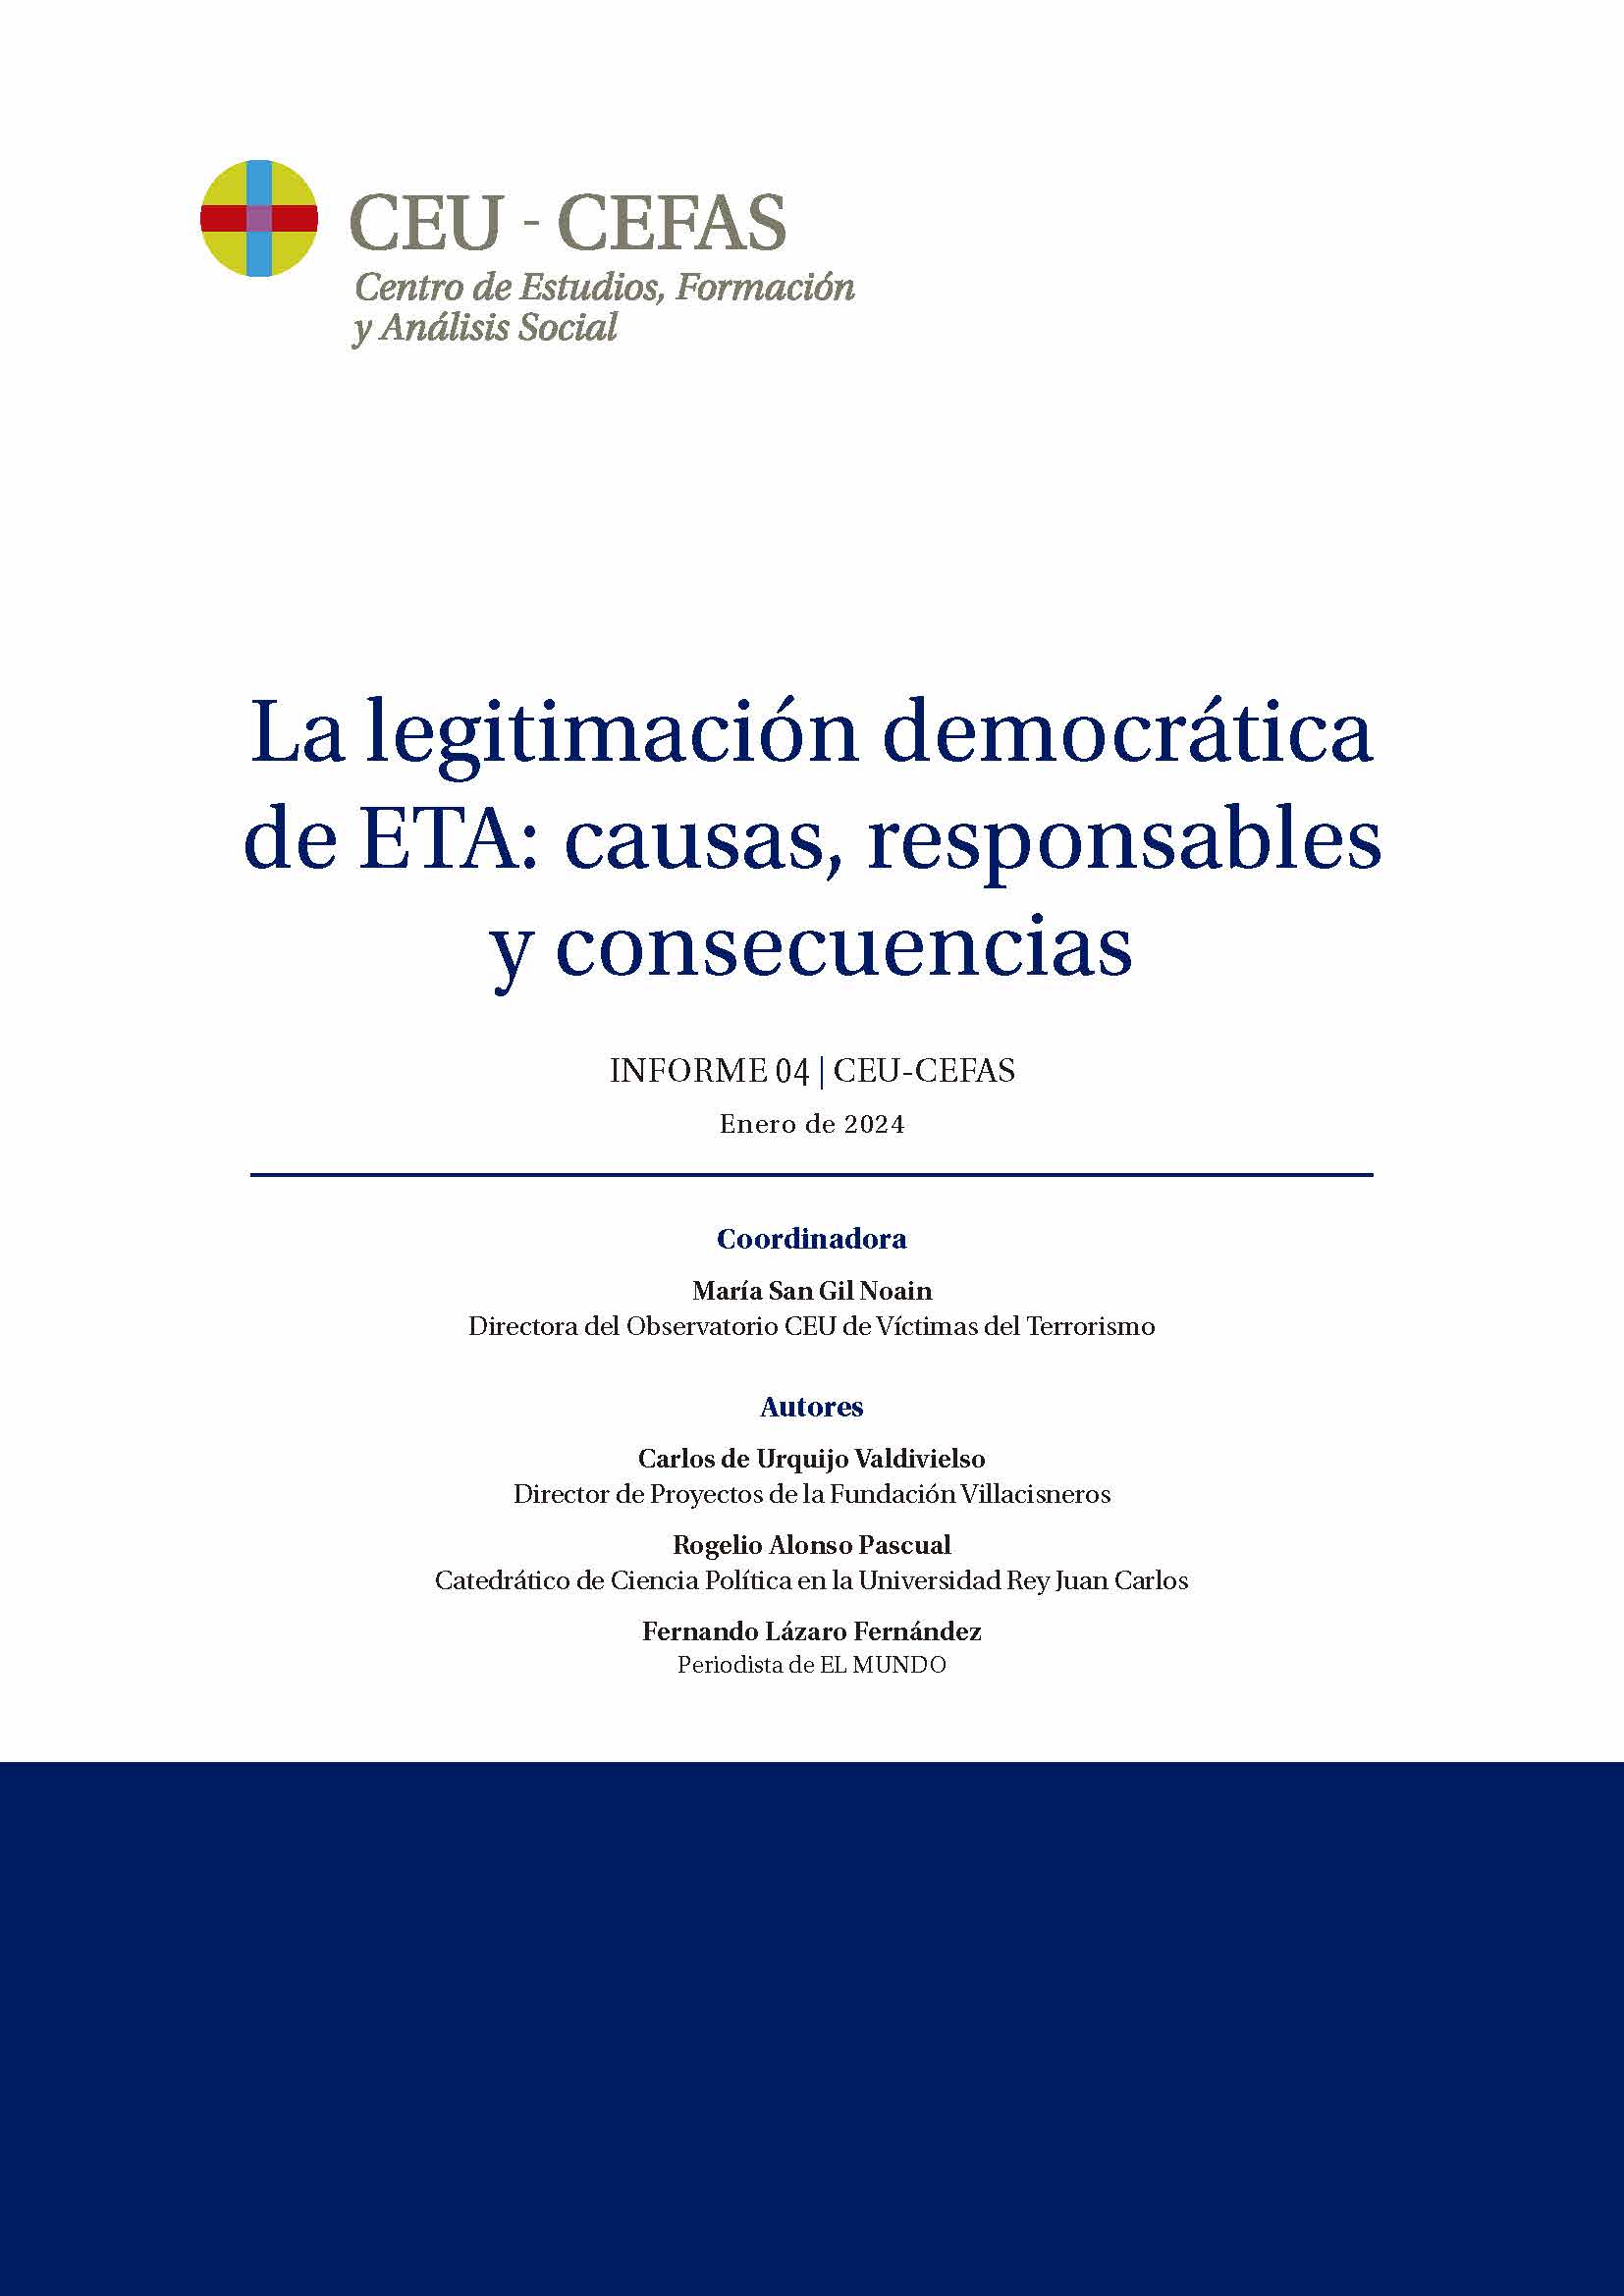 LA LEGITIMACIÓN DEMOCRÁTICA DE ETA: CAUSAS, RESPONSABLES Y CONSECUENCIAS. INFORME 04 - CEU-CEFAS. ENERO DE 2024